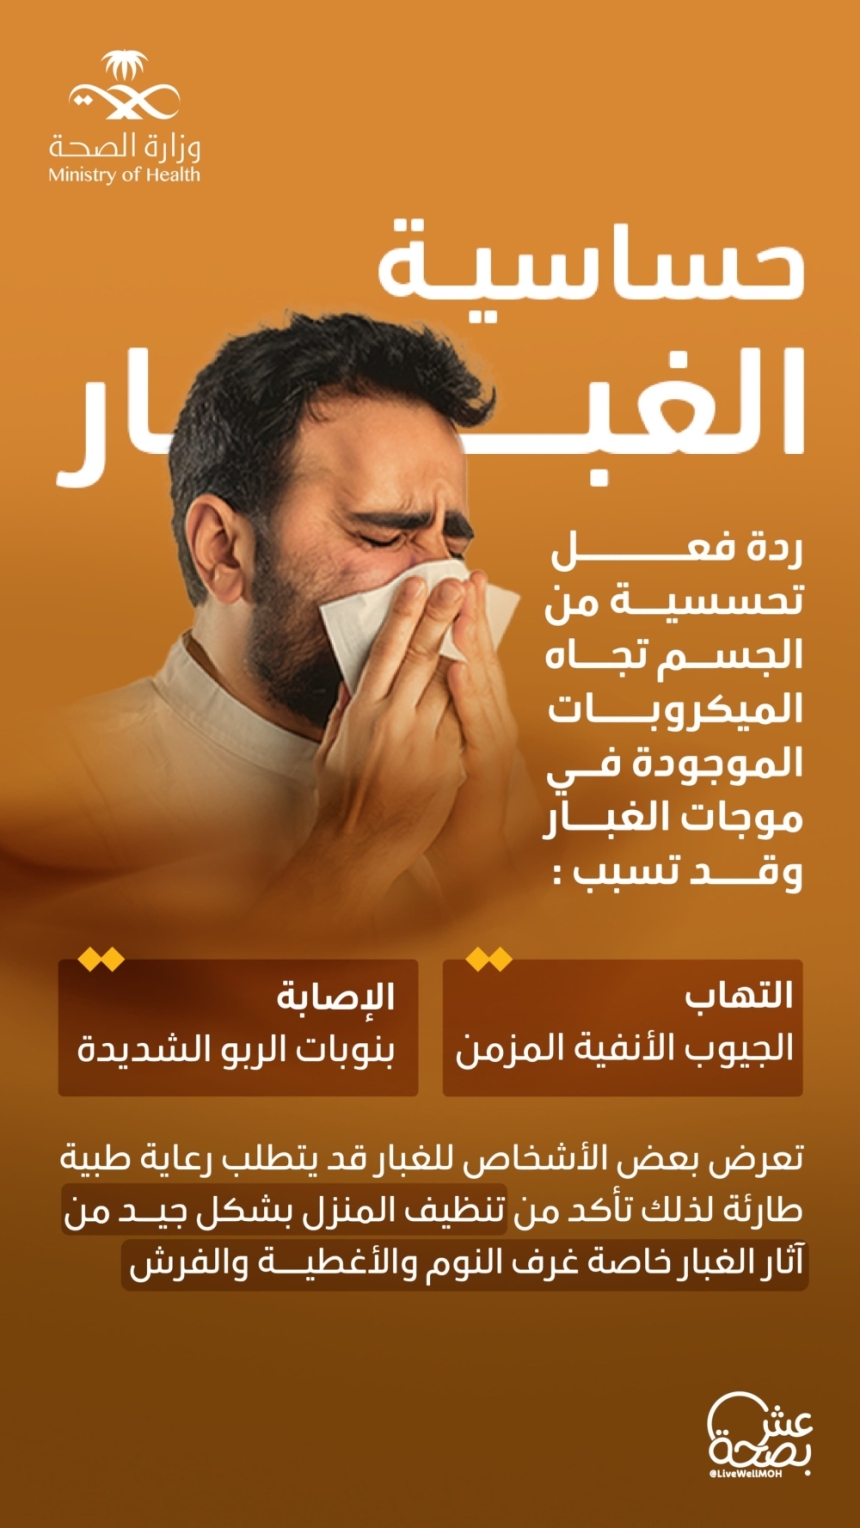 ينصح لمن يعانون من حساسية الغبار بتنظيف المنزل بشكل جيد من آثار الغبار- إكس عش بصحة